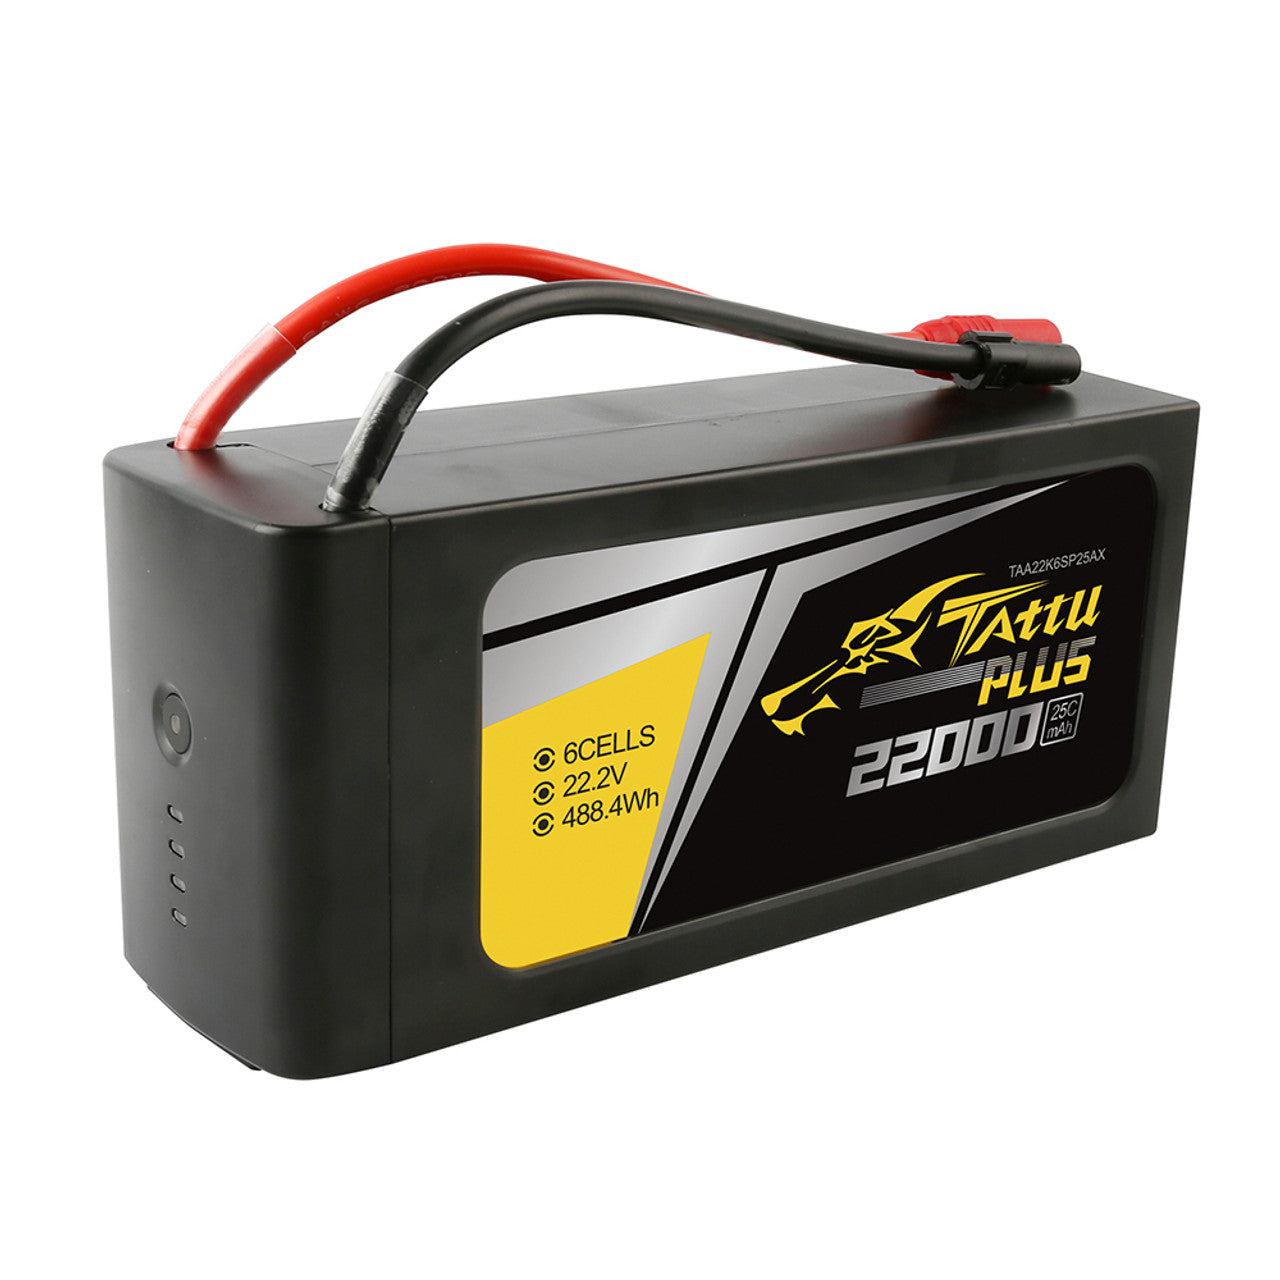 Tattu Plus 6s LiPo battery pack, 22000mAh capacity, 25C discharge rate.